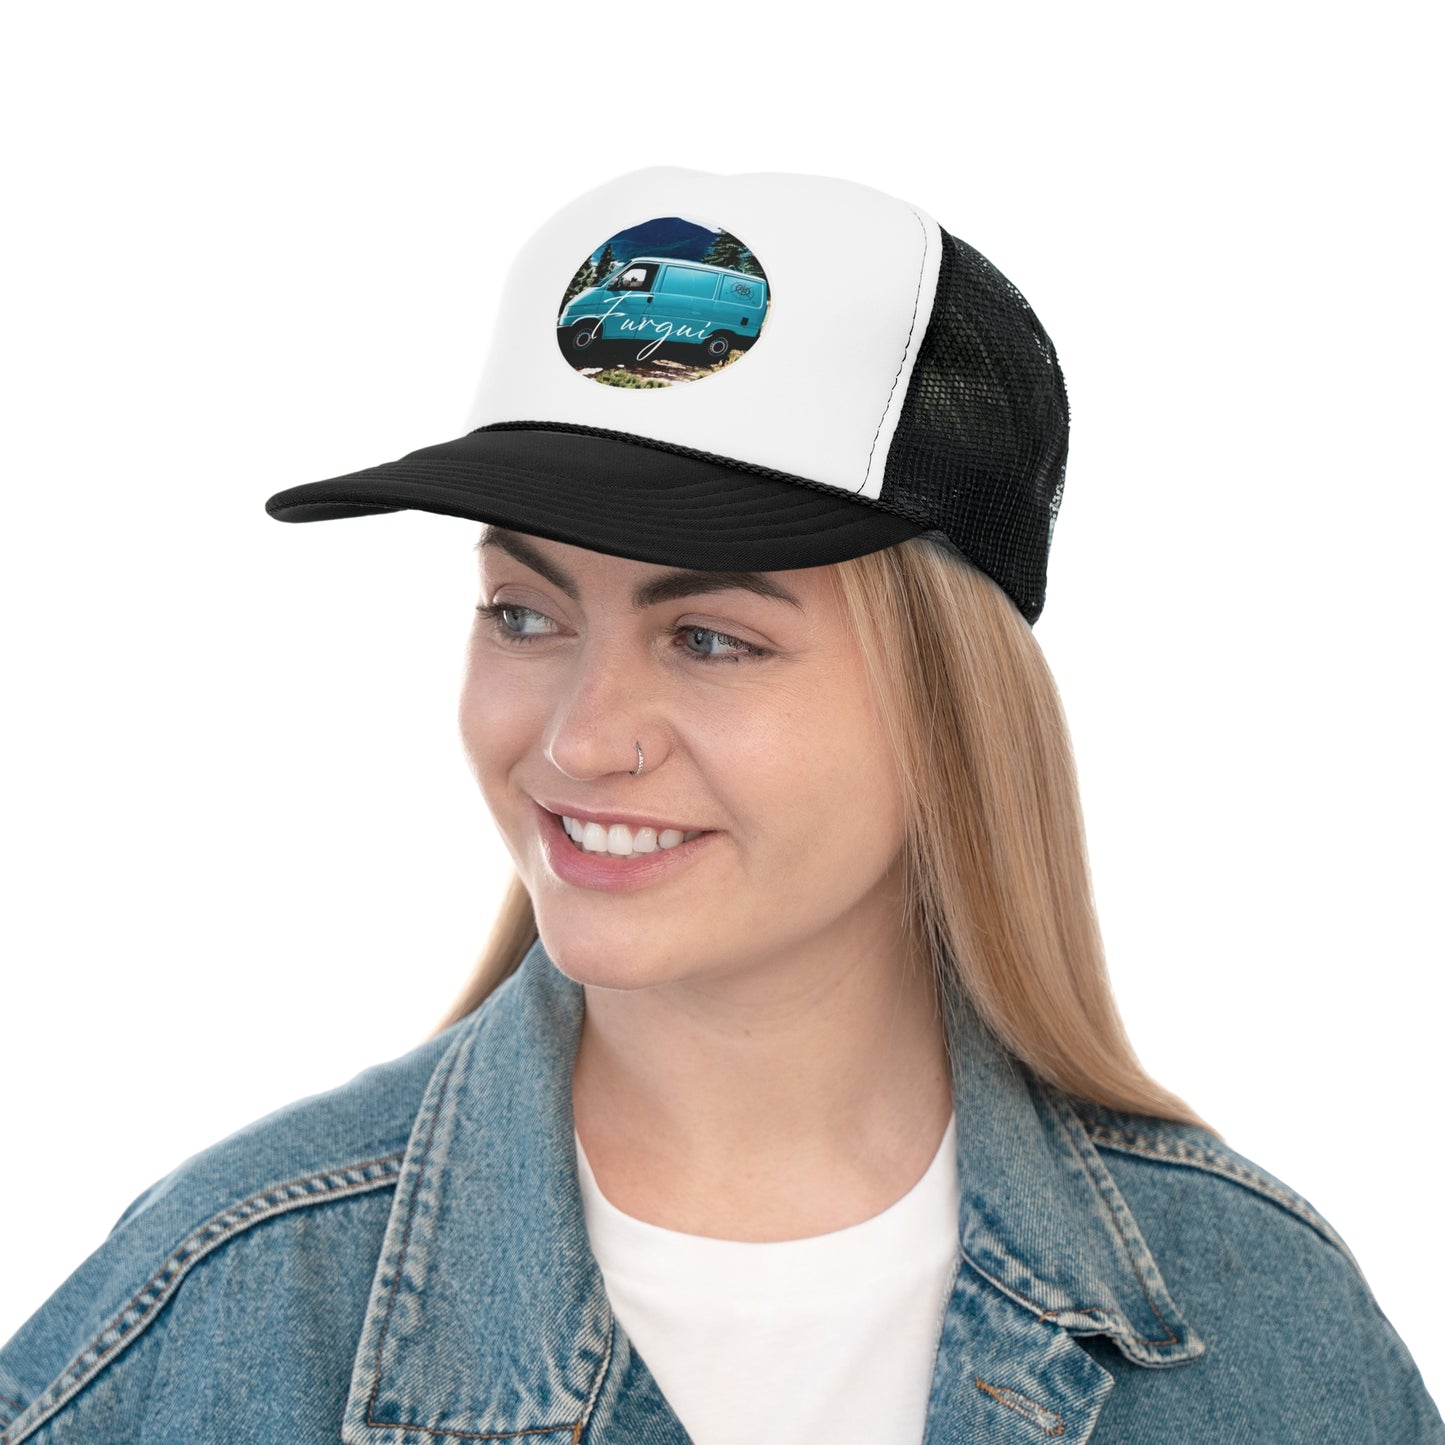 Gorra personalizada de furgoneta, gorra de casa rodante personalizada, gorra caravana personalizada, sombrero de camioneta personalizada.